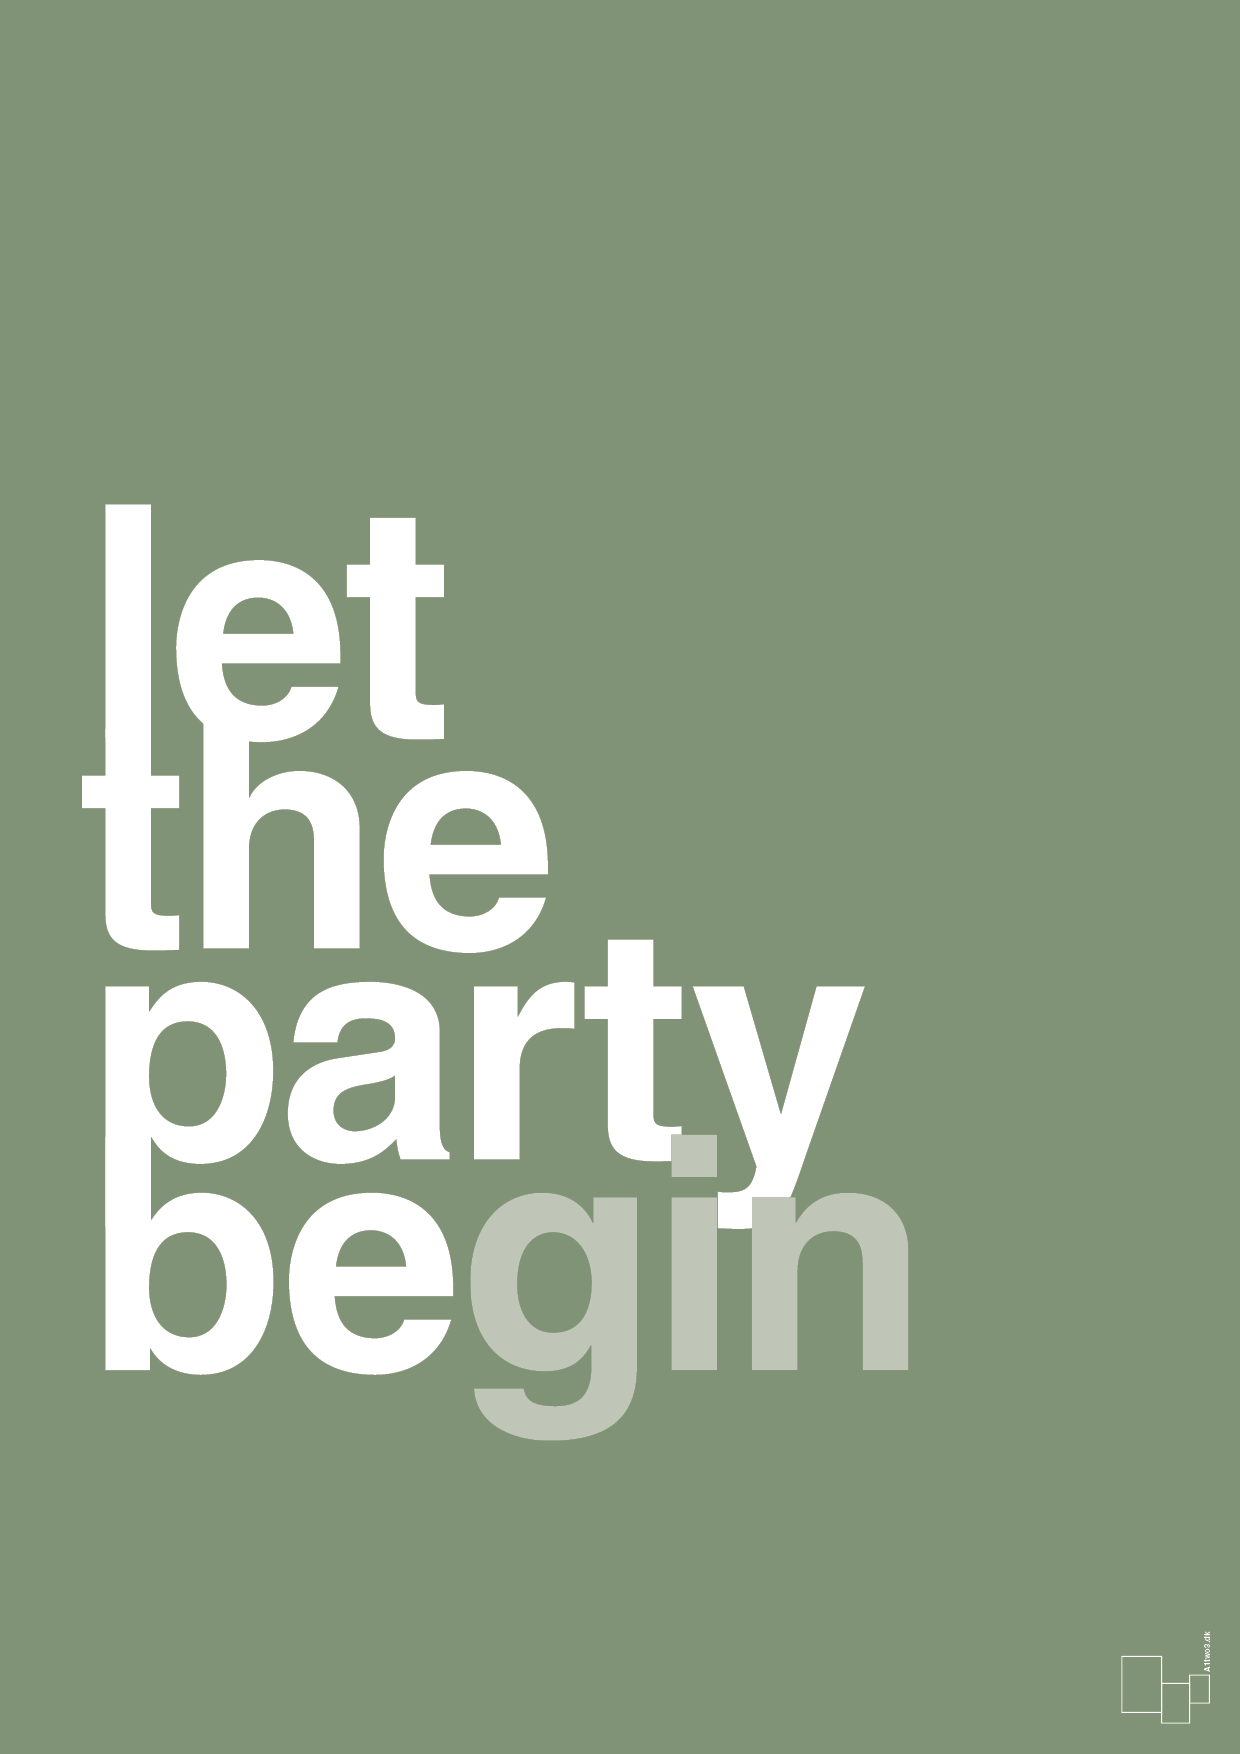 let the party begin - Plakat med Ordsprog i Jade